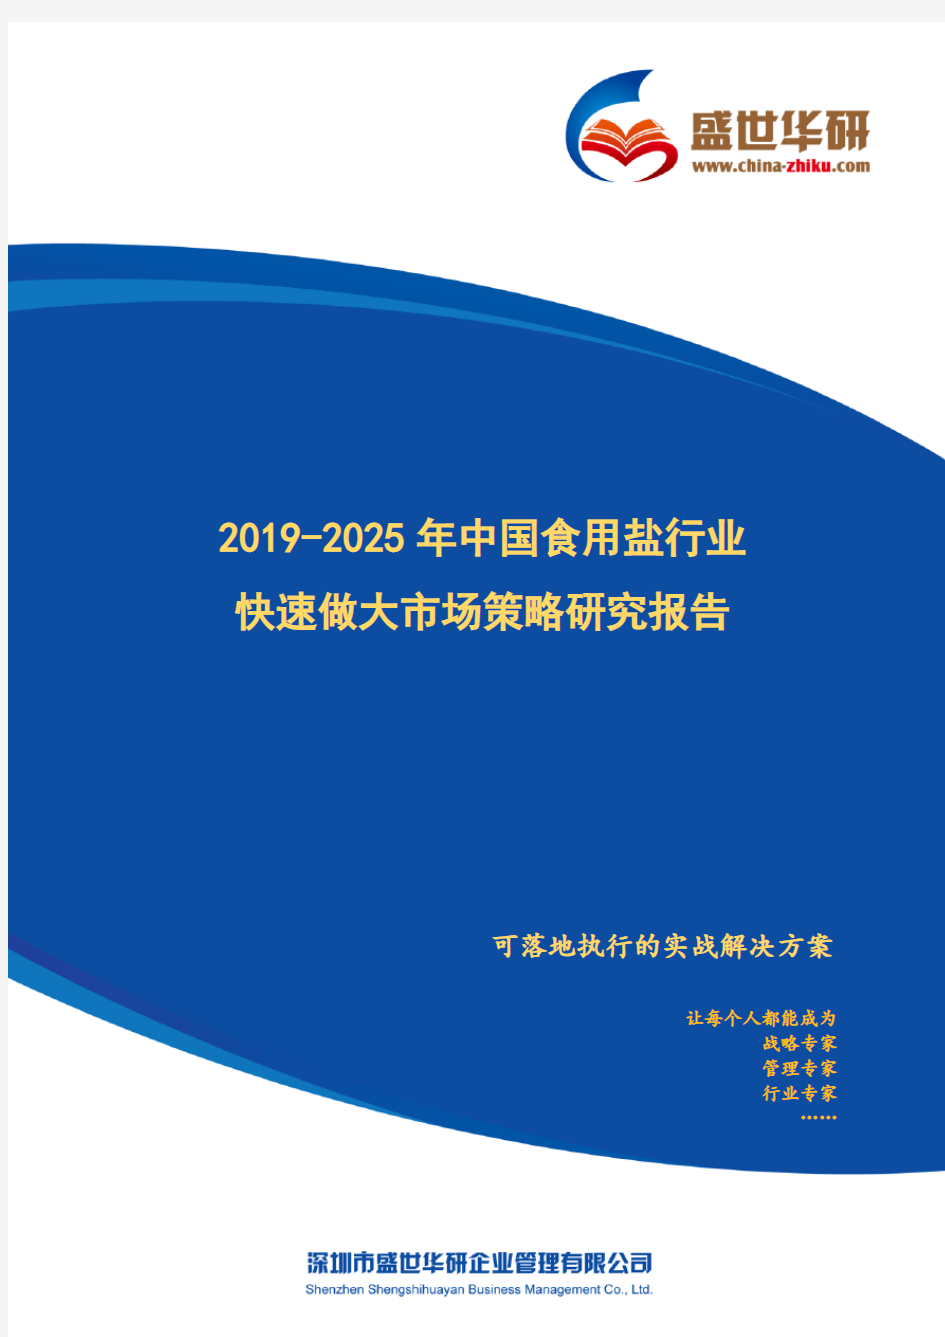 【完整版】2019-2025年中国食用盐行业快速做大市场规模策略研究报告